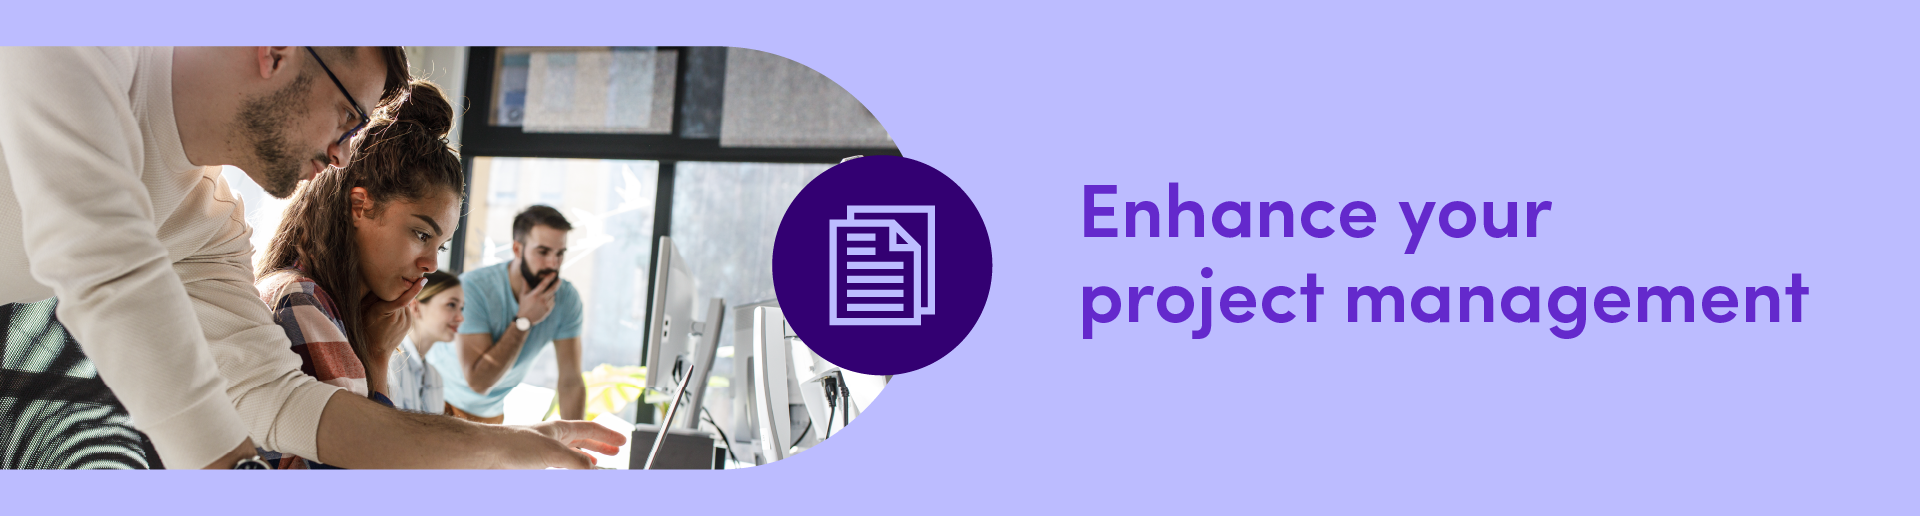 Enhance your project management